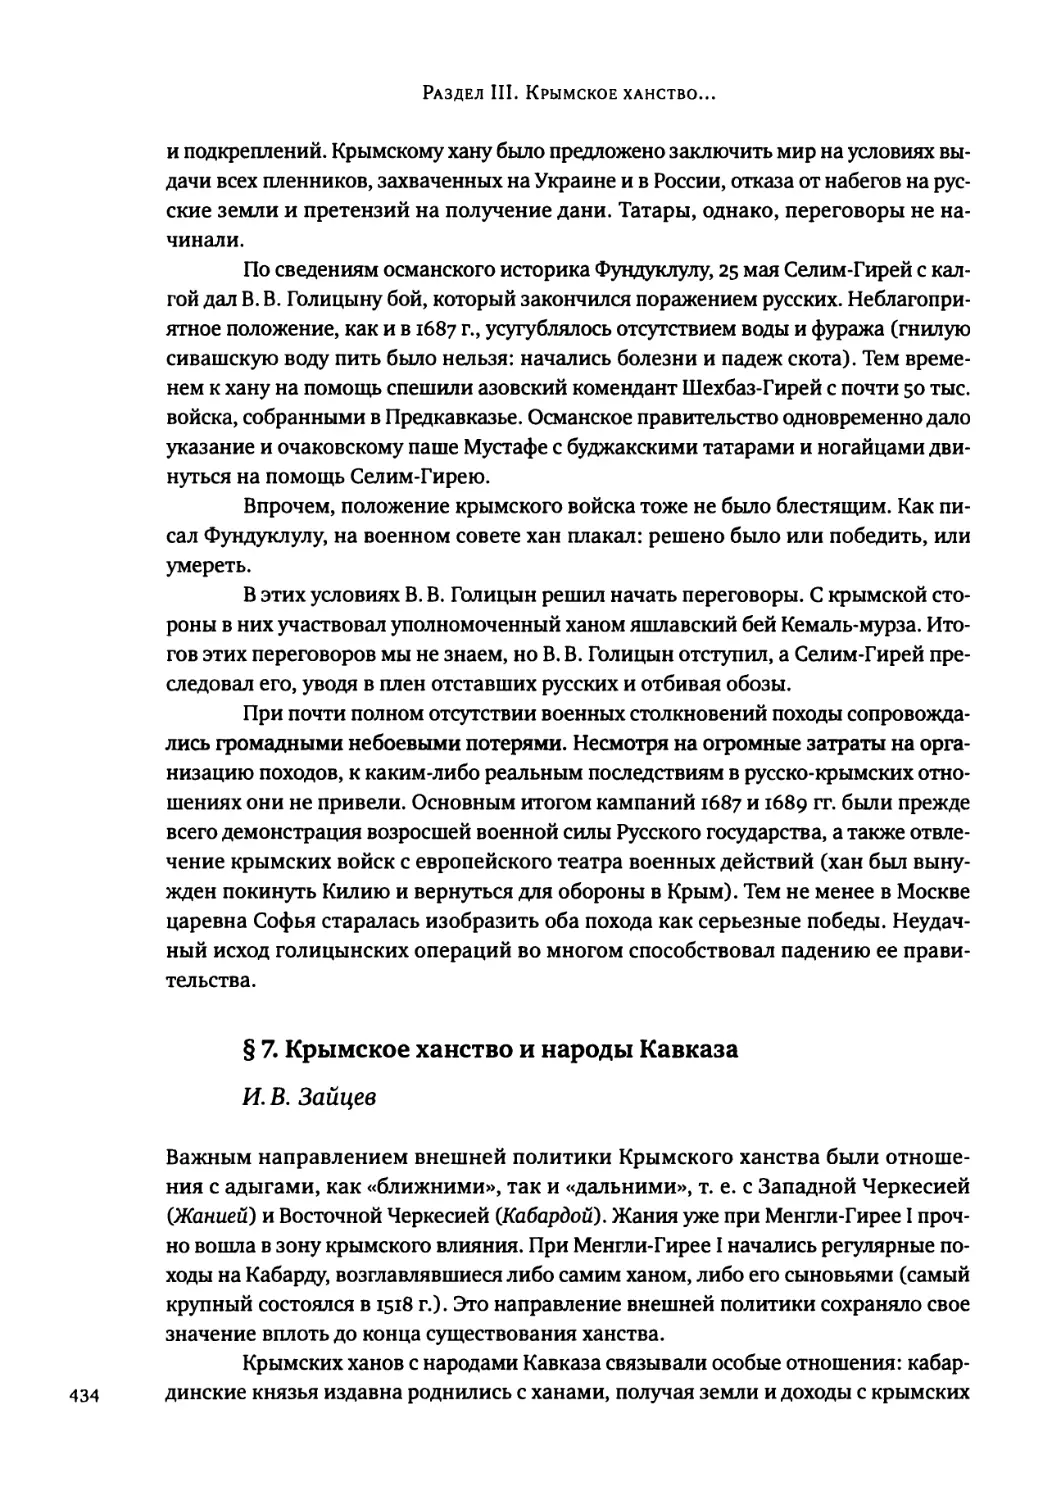 § 7. Крымское ханство и народы Кавказа